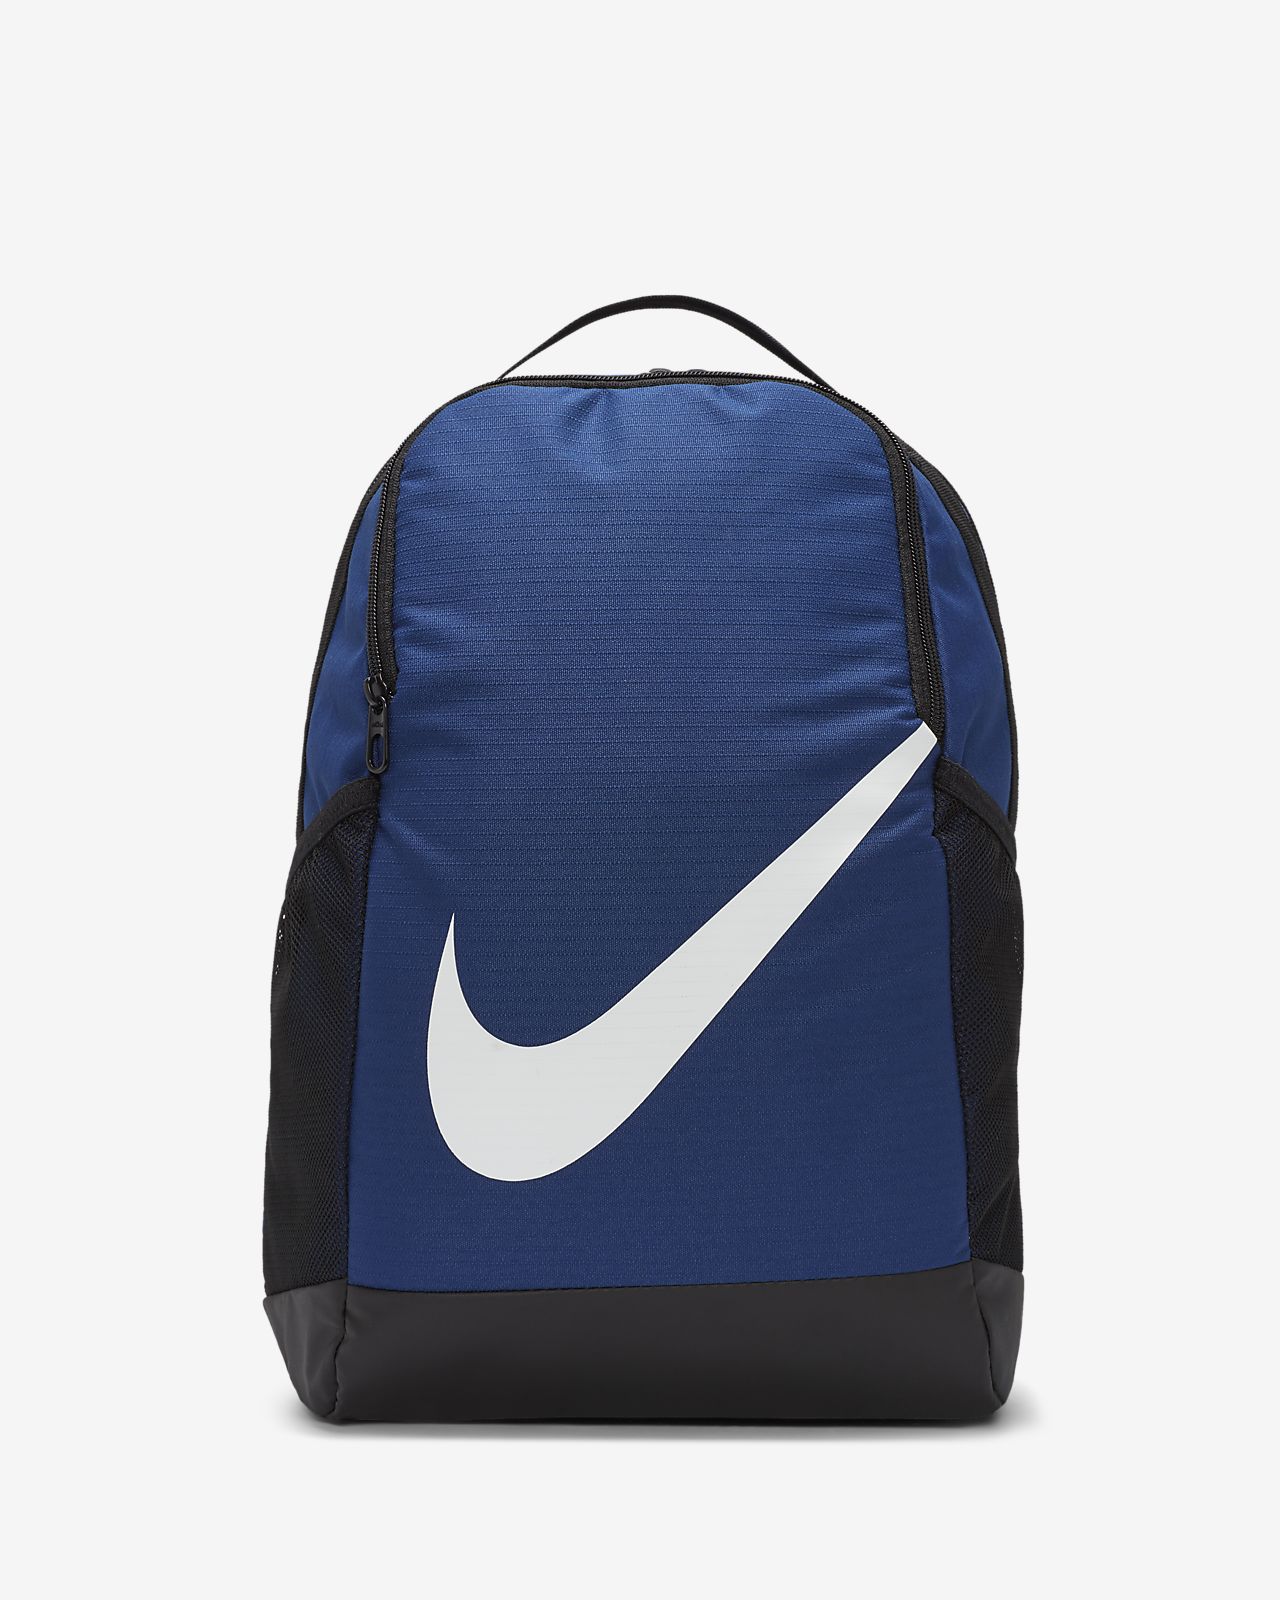 nike brasilia blue backpack